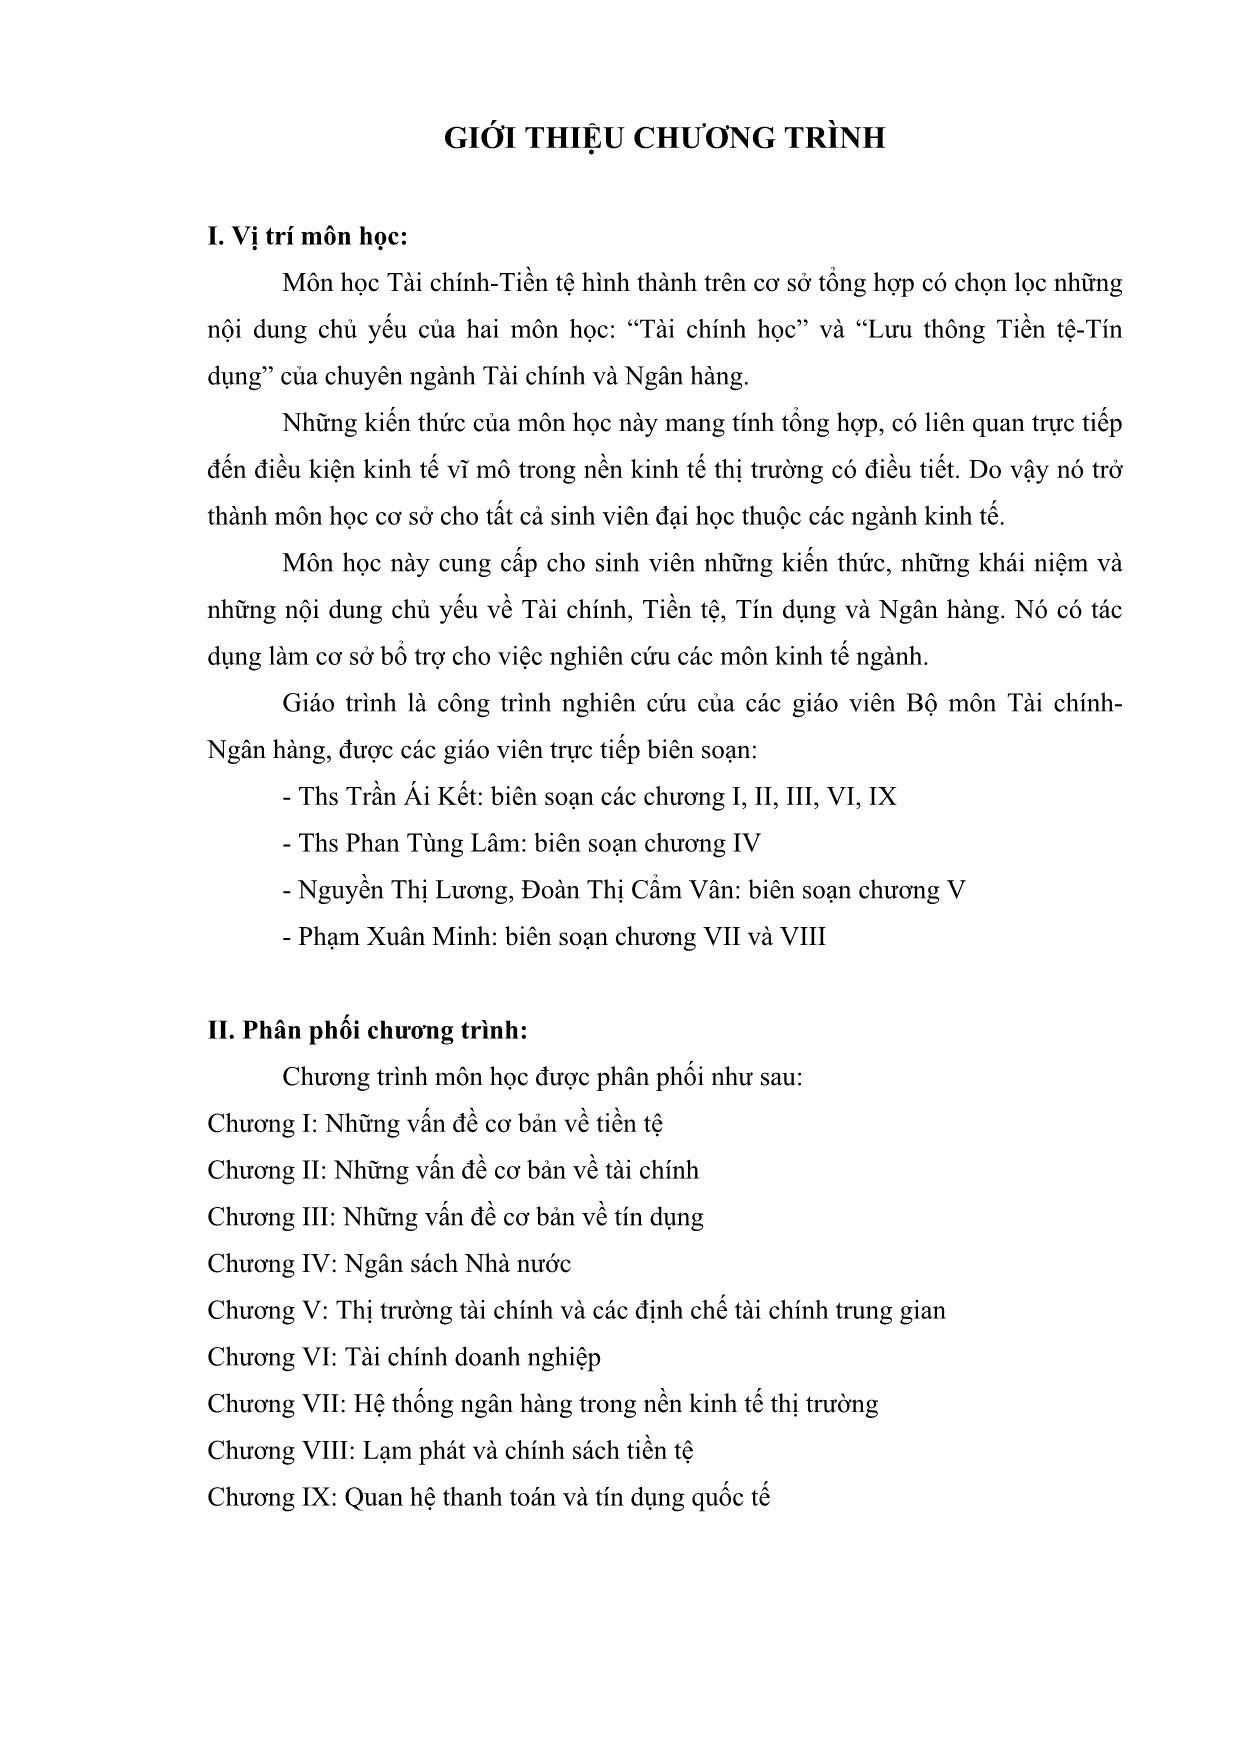 Giáo trình Môn học Tài chính-Tiền tệ trang 1